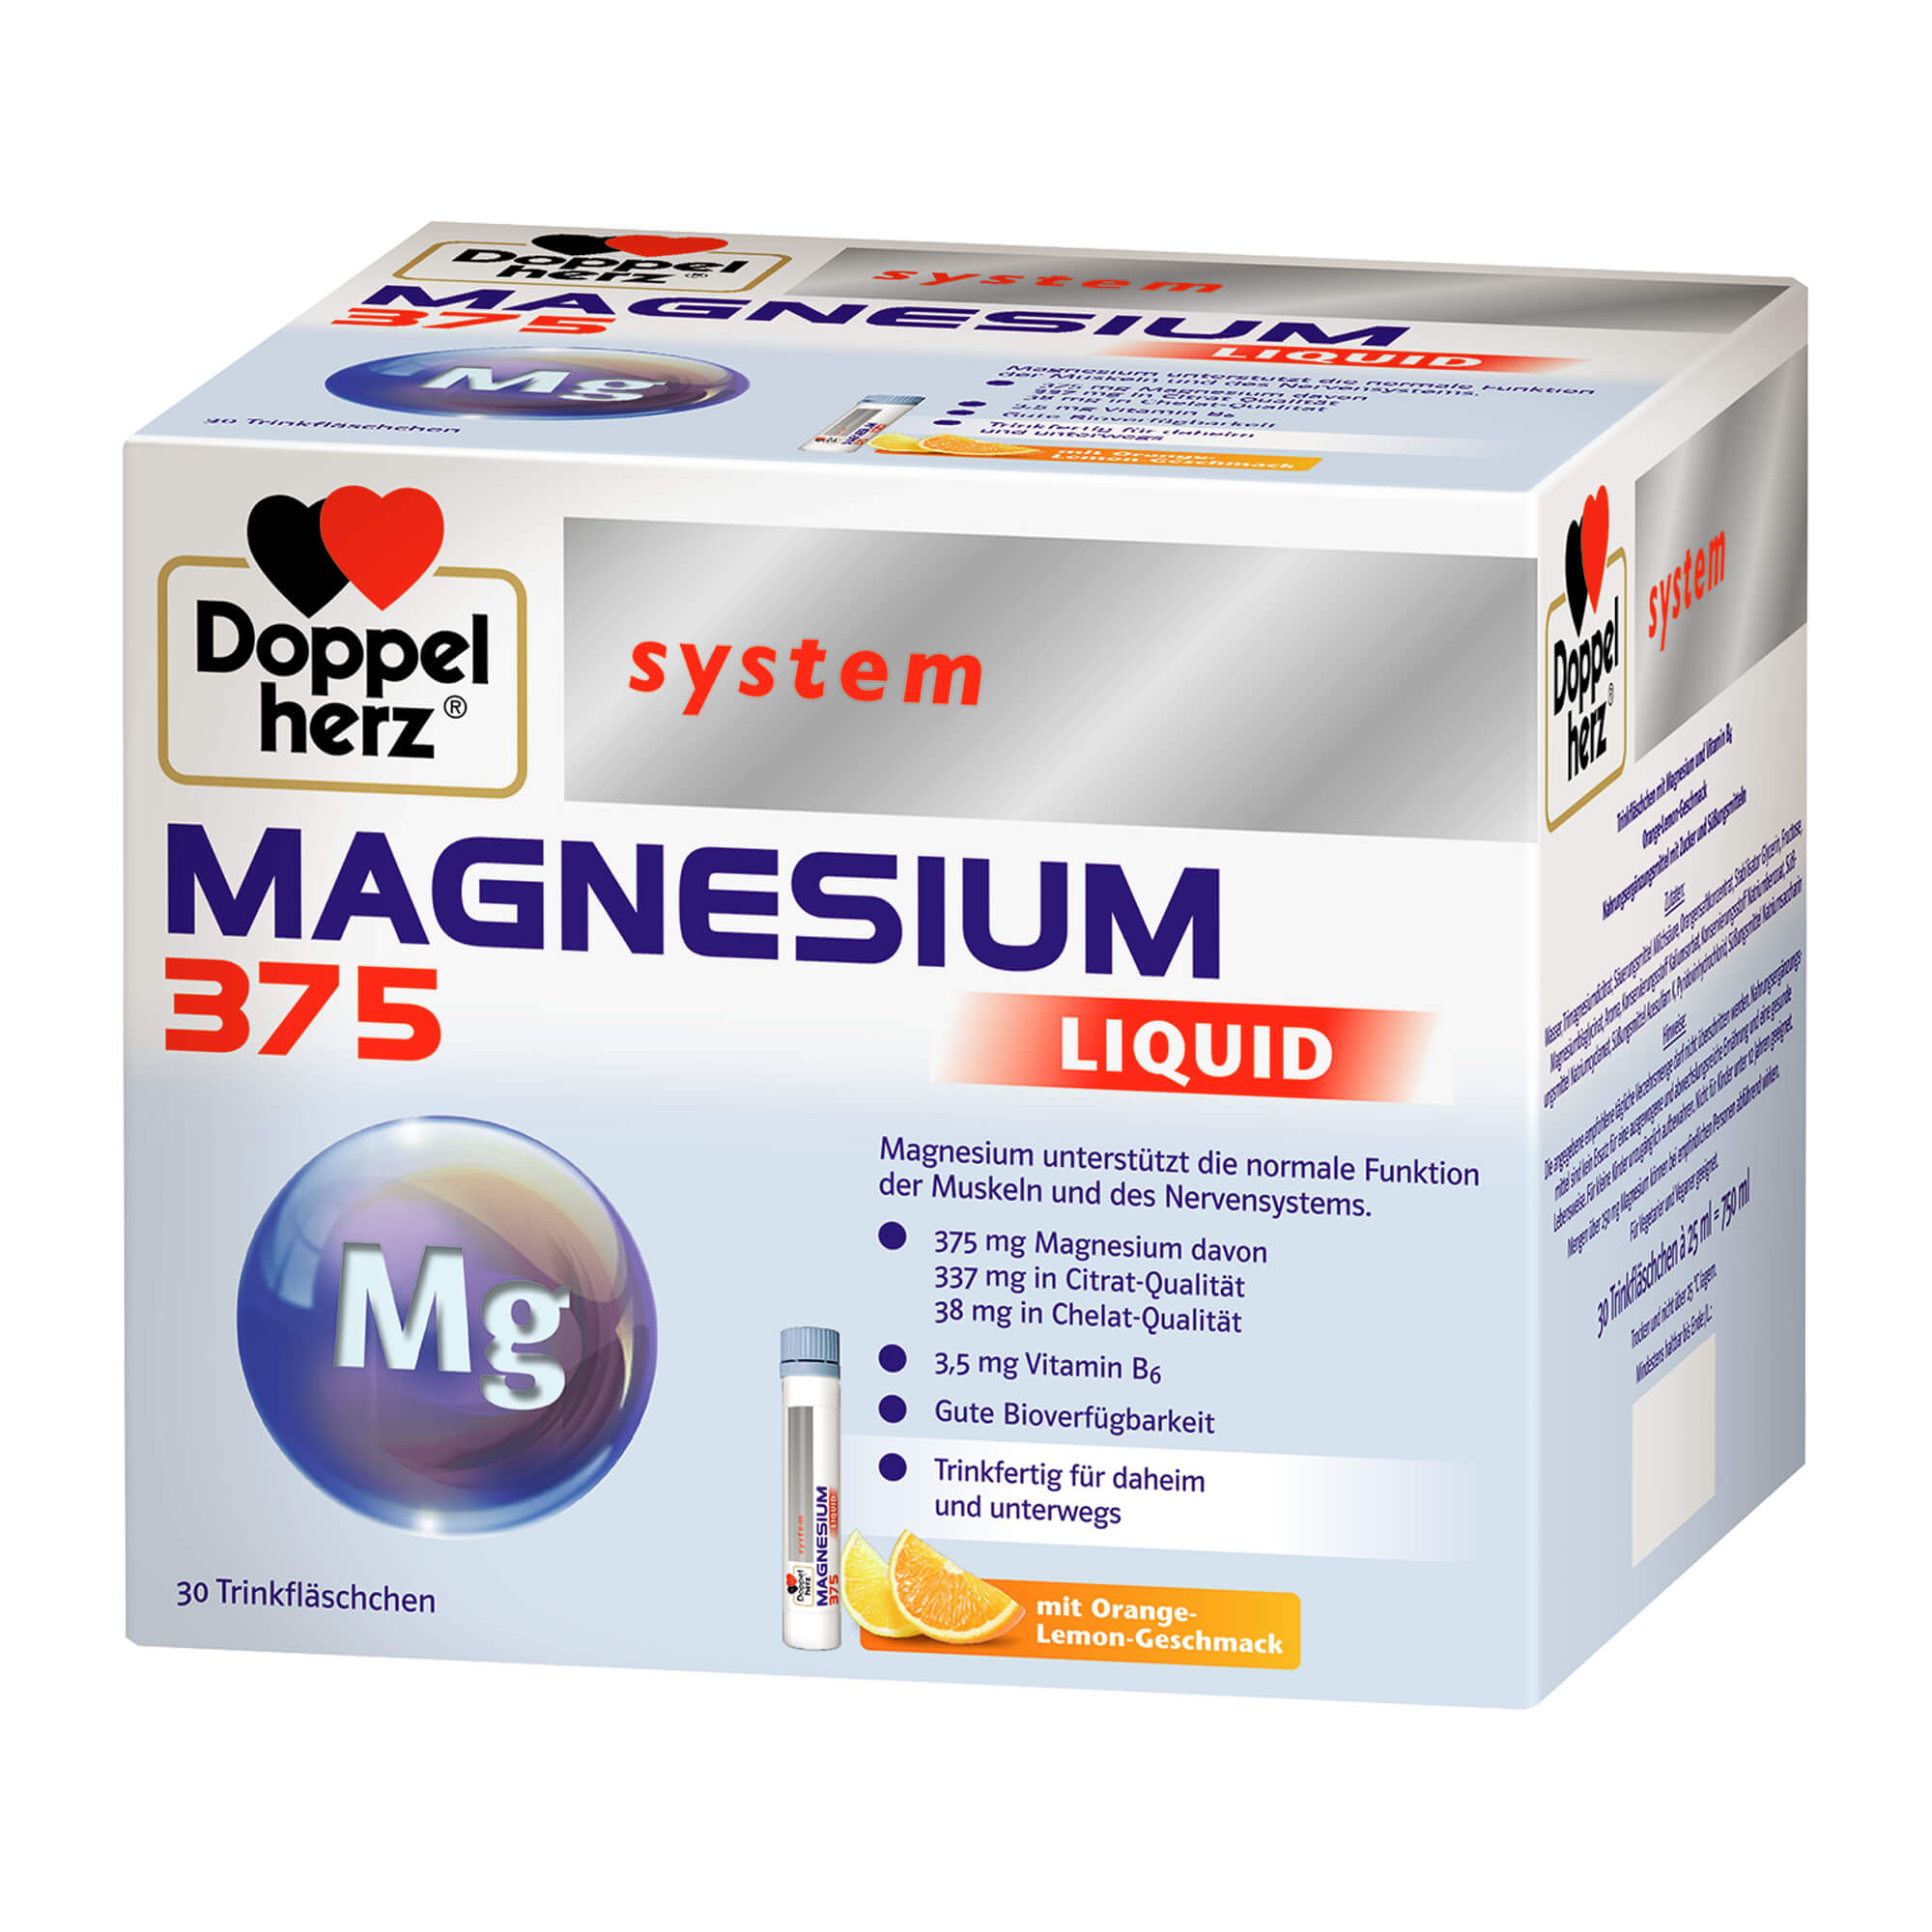 Magnesium unterstützt die normale Funktion der Muskeln und des Nervensystems. Mit Orange-Lemon-Geschmack.